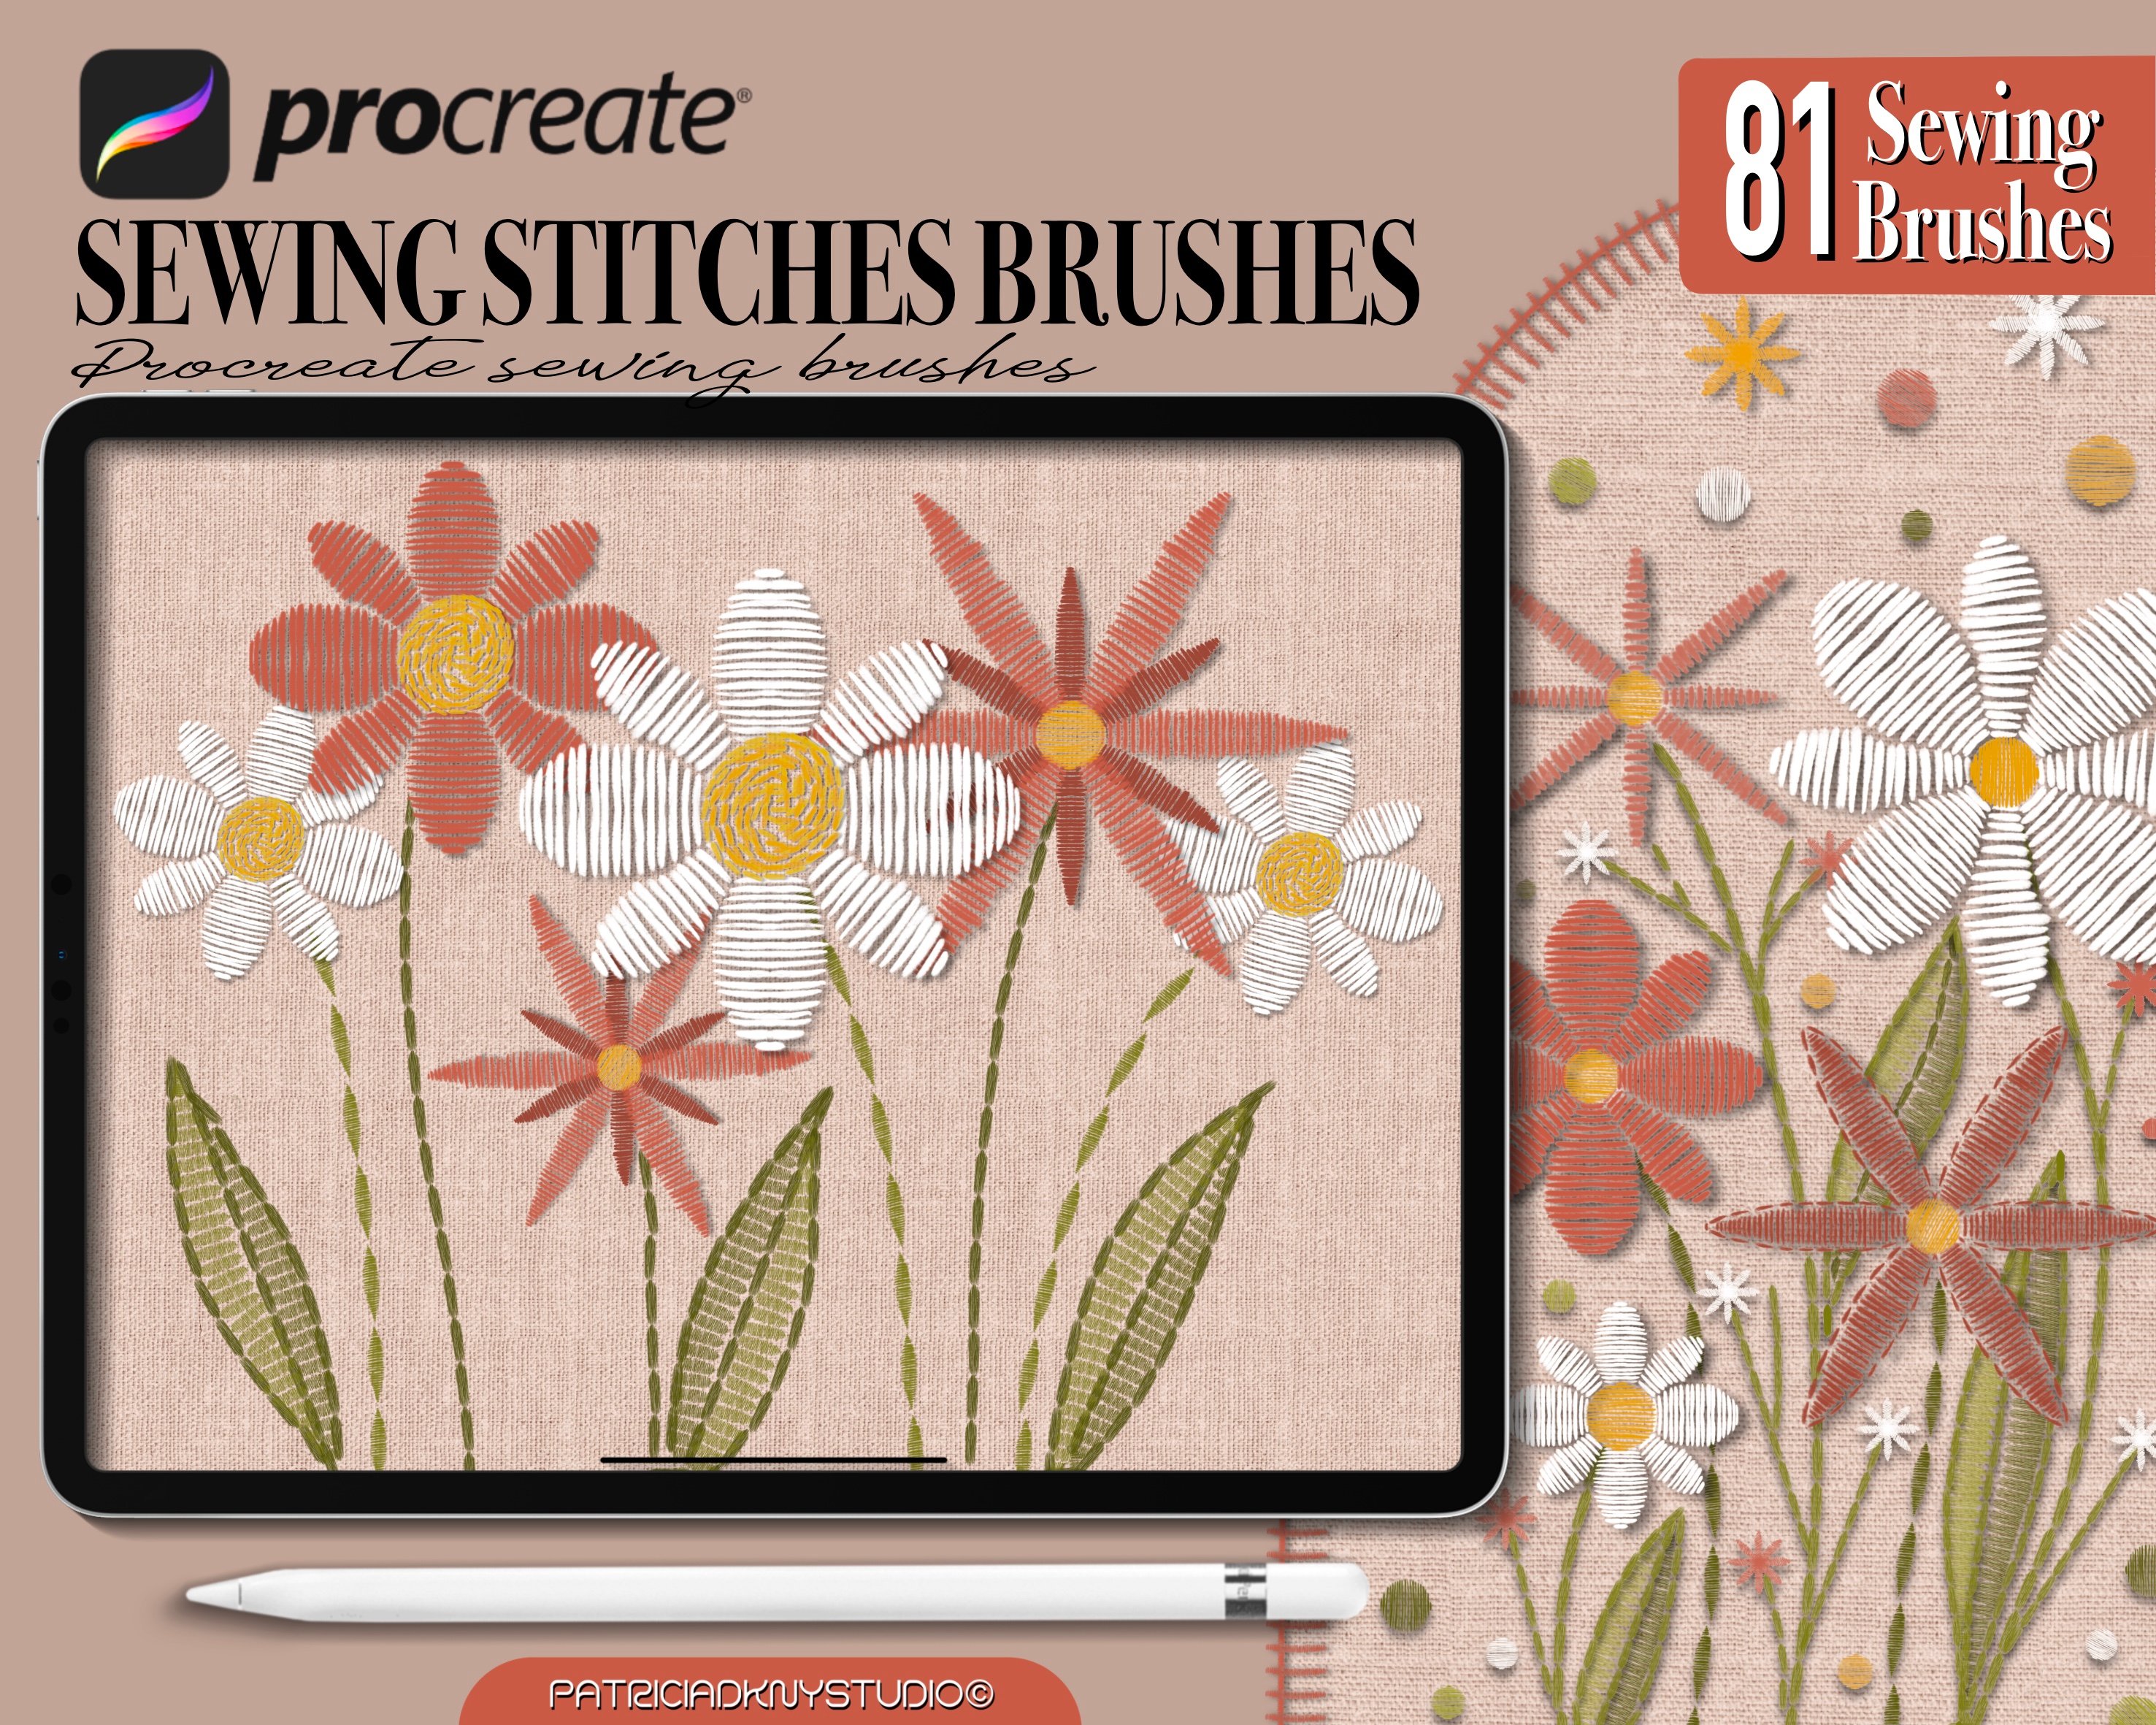 procreate stitch brushes free